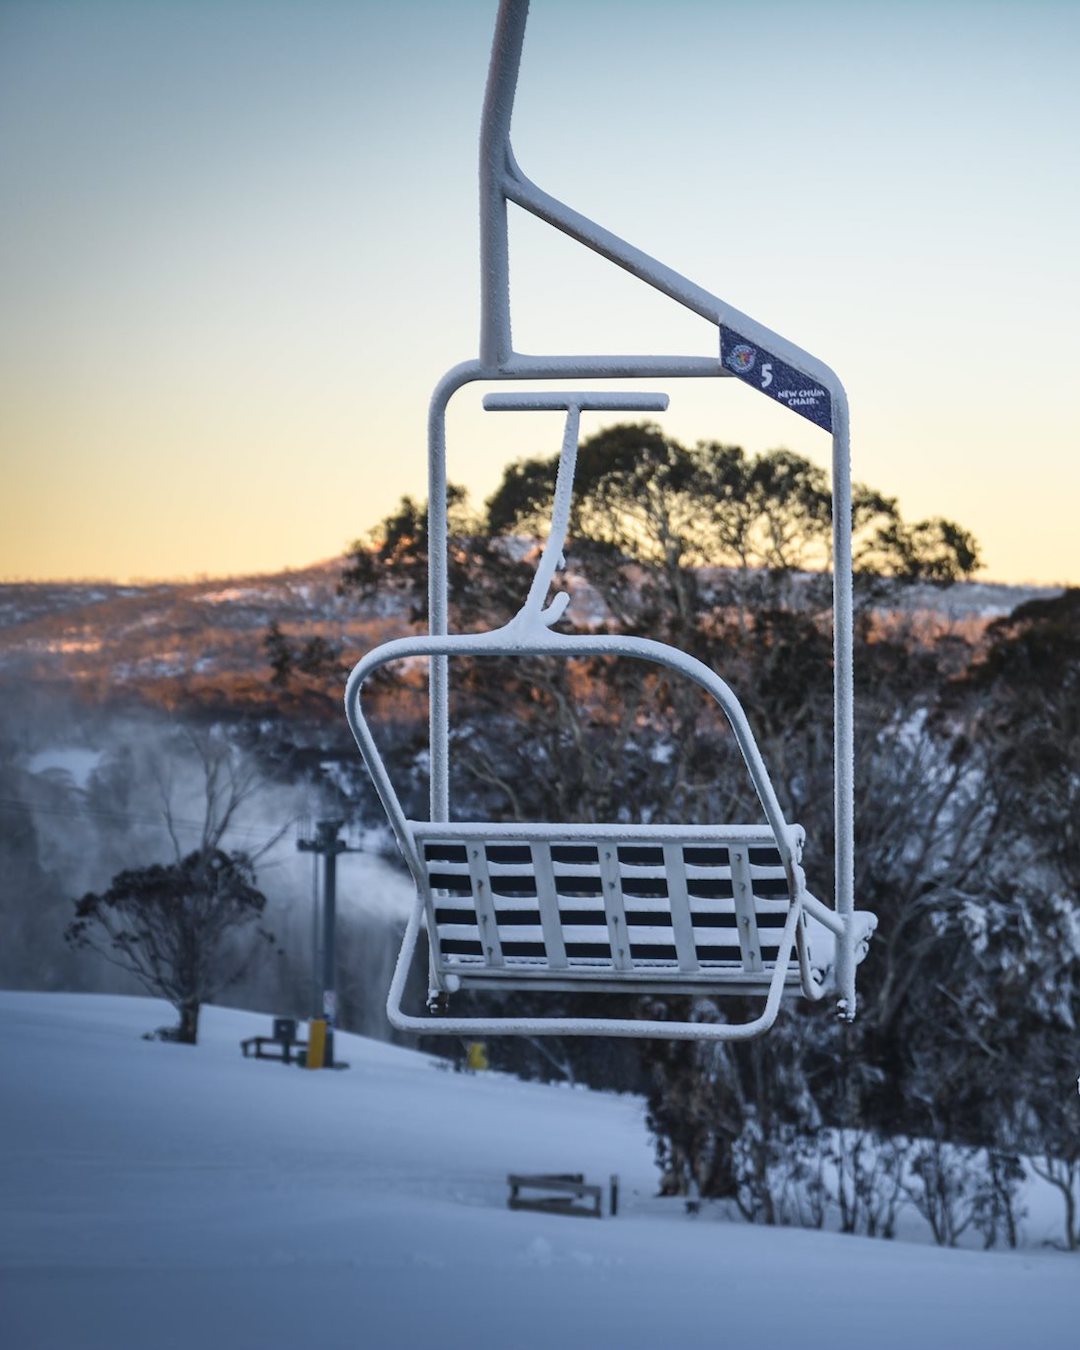 Selwyn Snow Ski Resort NSW